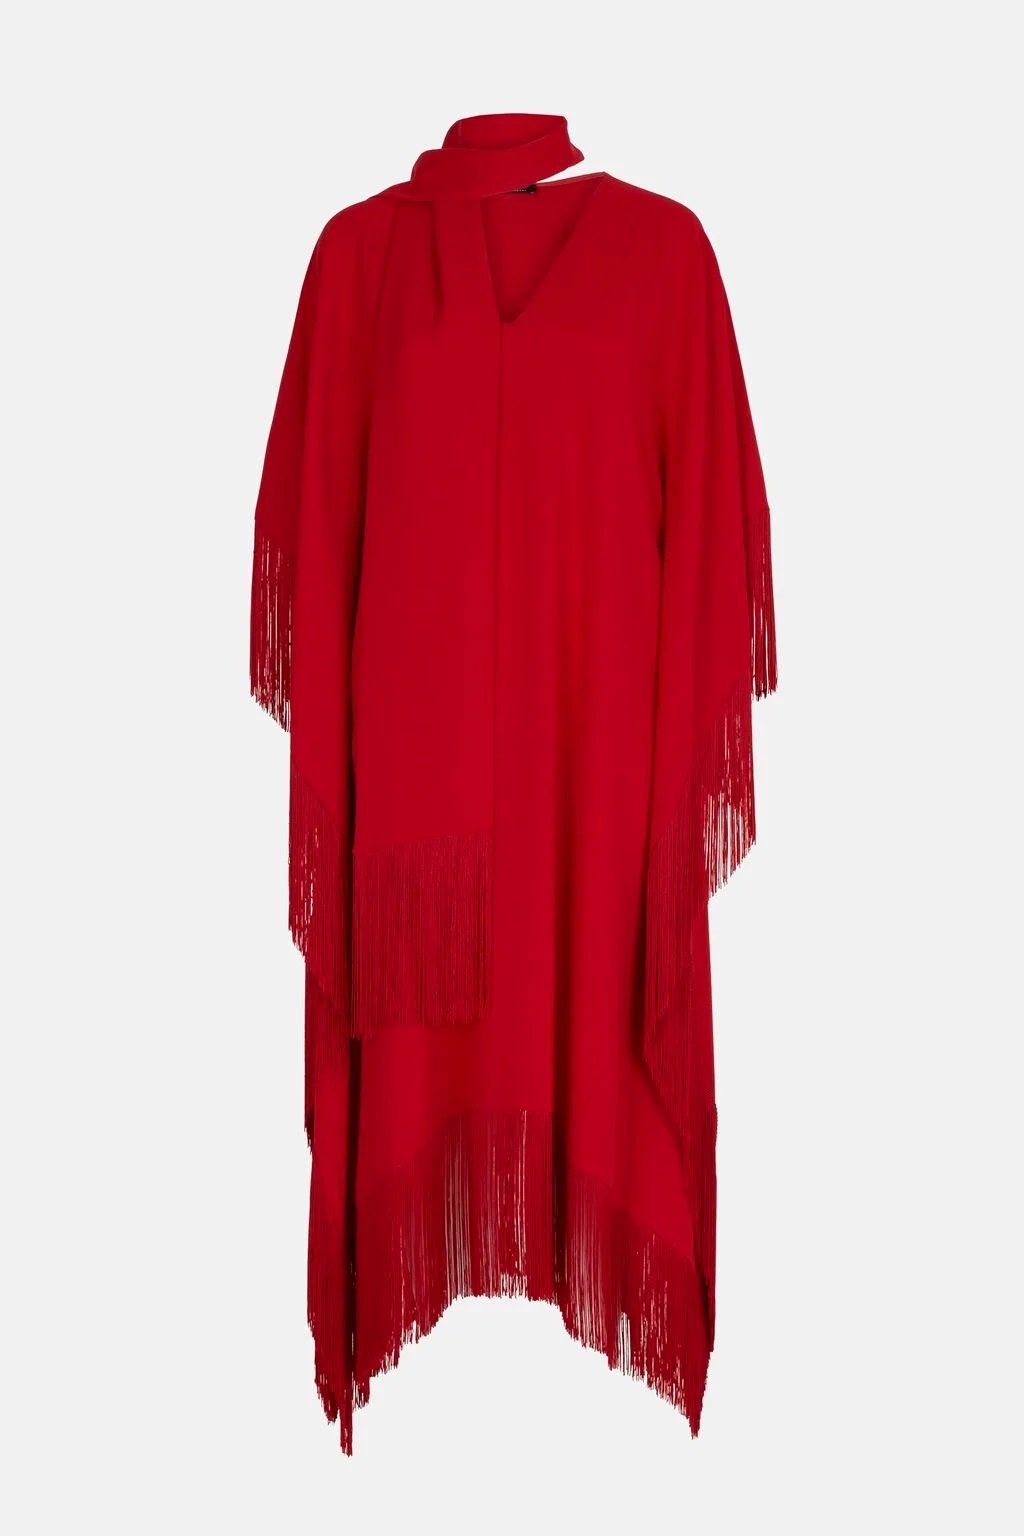 Carolina Herrera Oversized Fringe Crepe Dress in Red.jpg